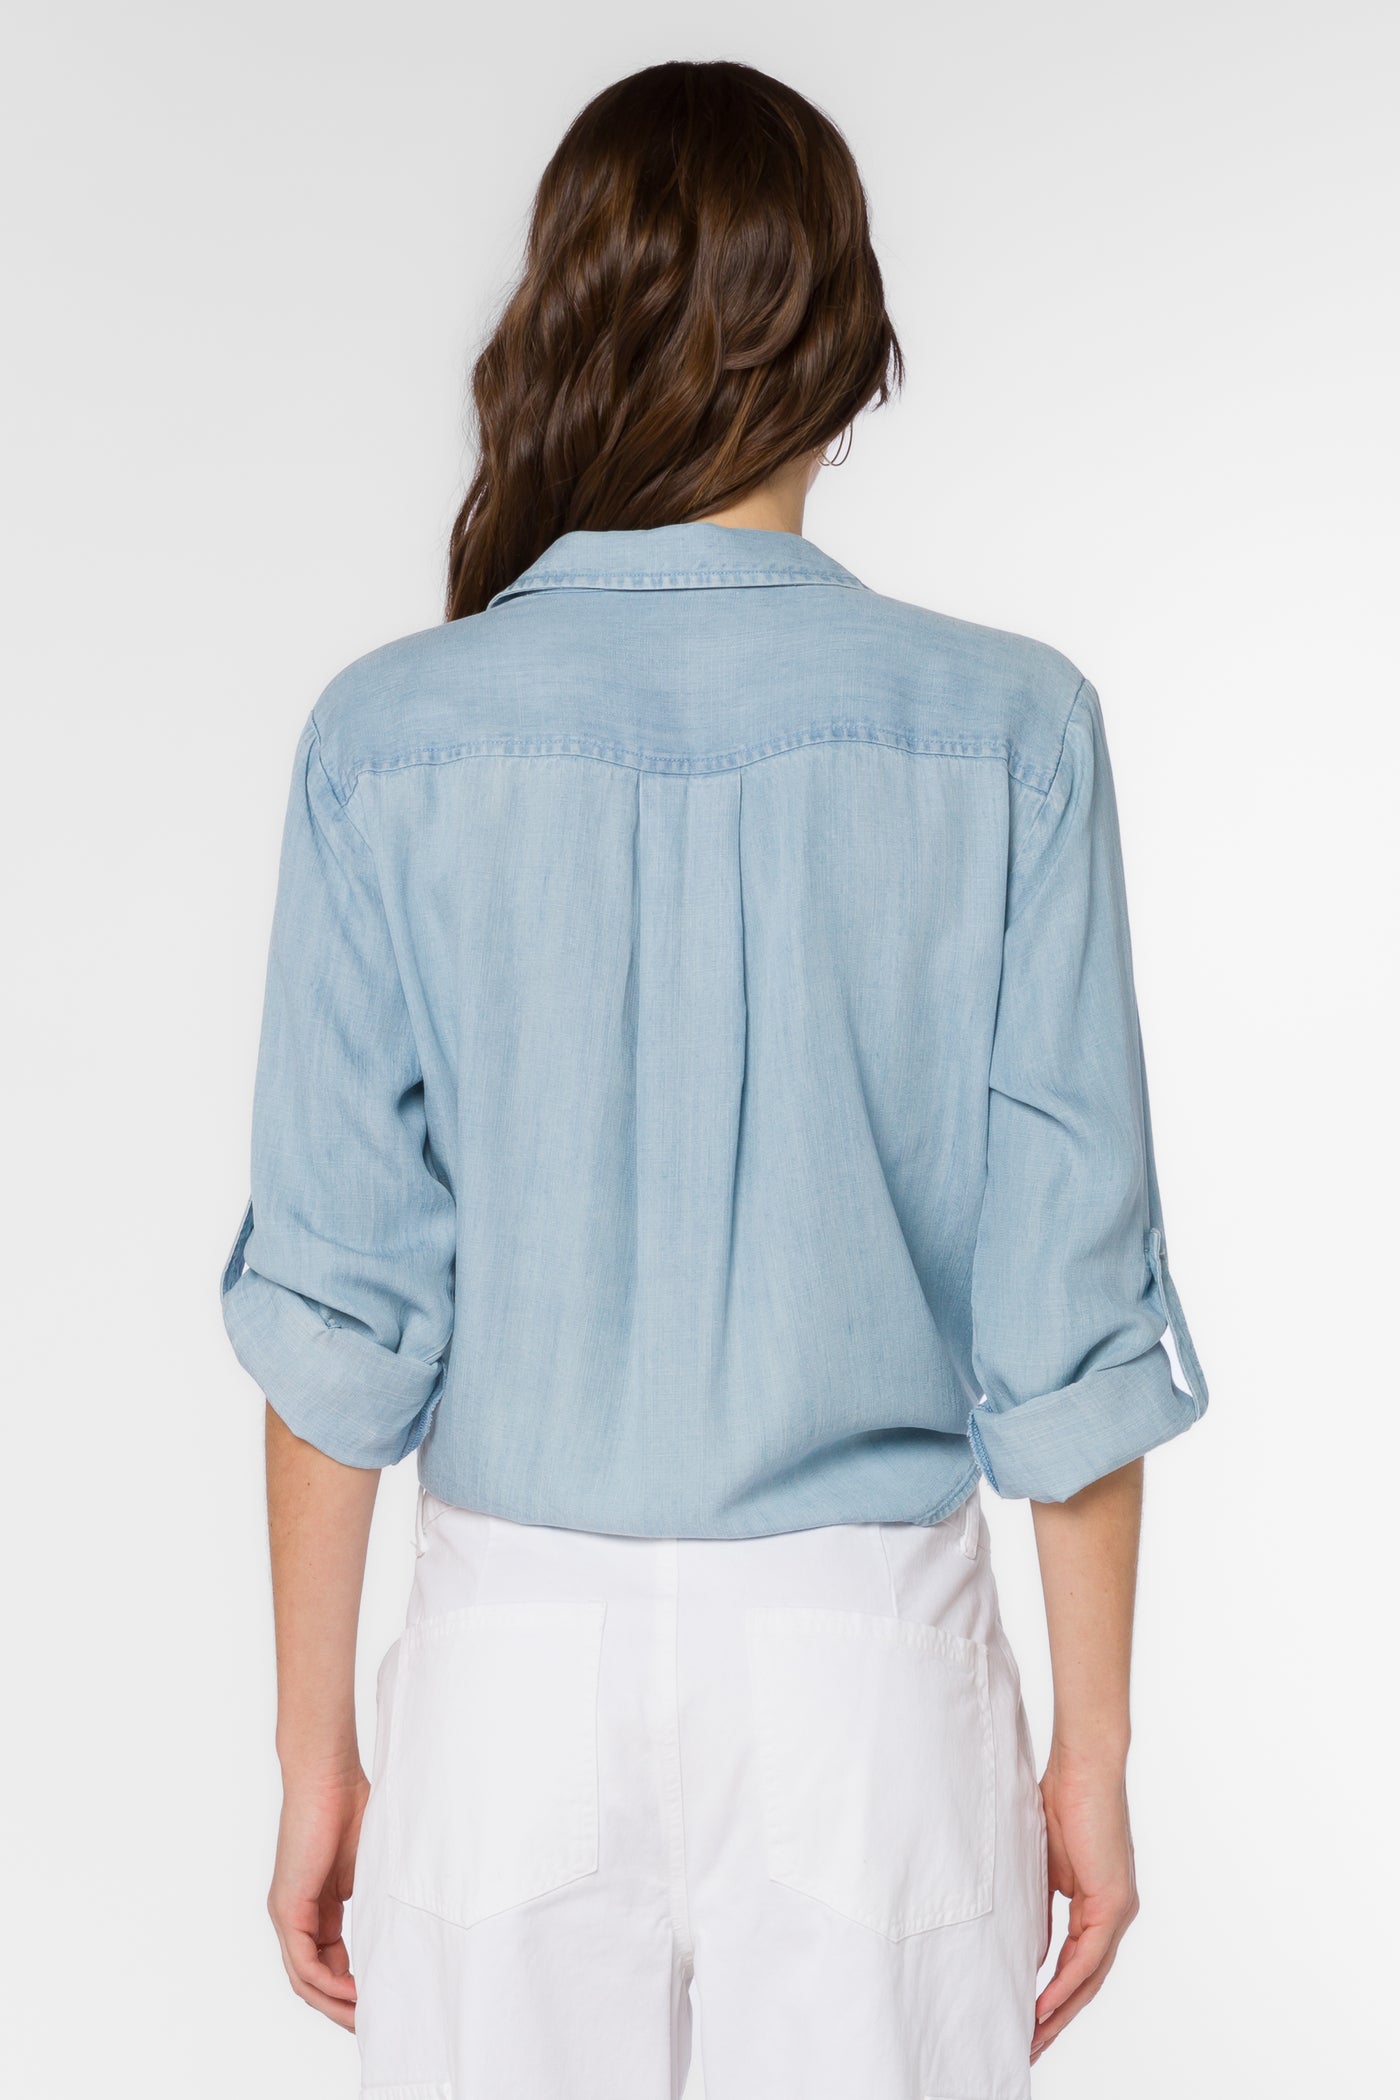 Solange Sky Blue Shirt - Tops - Velvet Heart Clothing